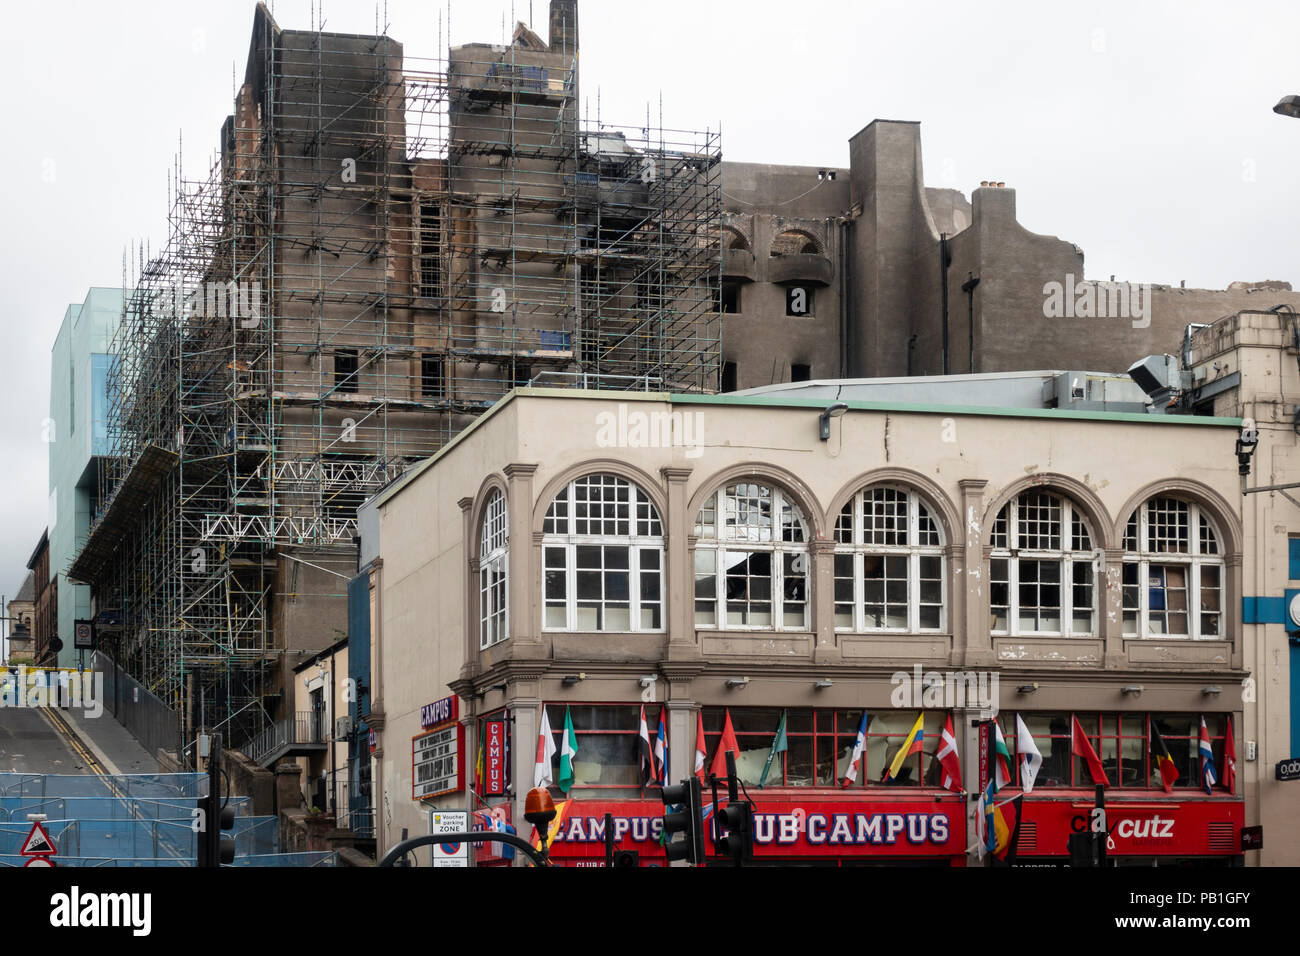 Avis d'incendie endommagé la Glasgow School of Art dans le centre de Glasgow. Bâtiment est en train d'être démoli en raison de la gravité des dommages, Ecosse, Royaume-Uni Banque D'Images